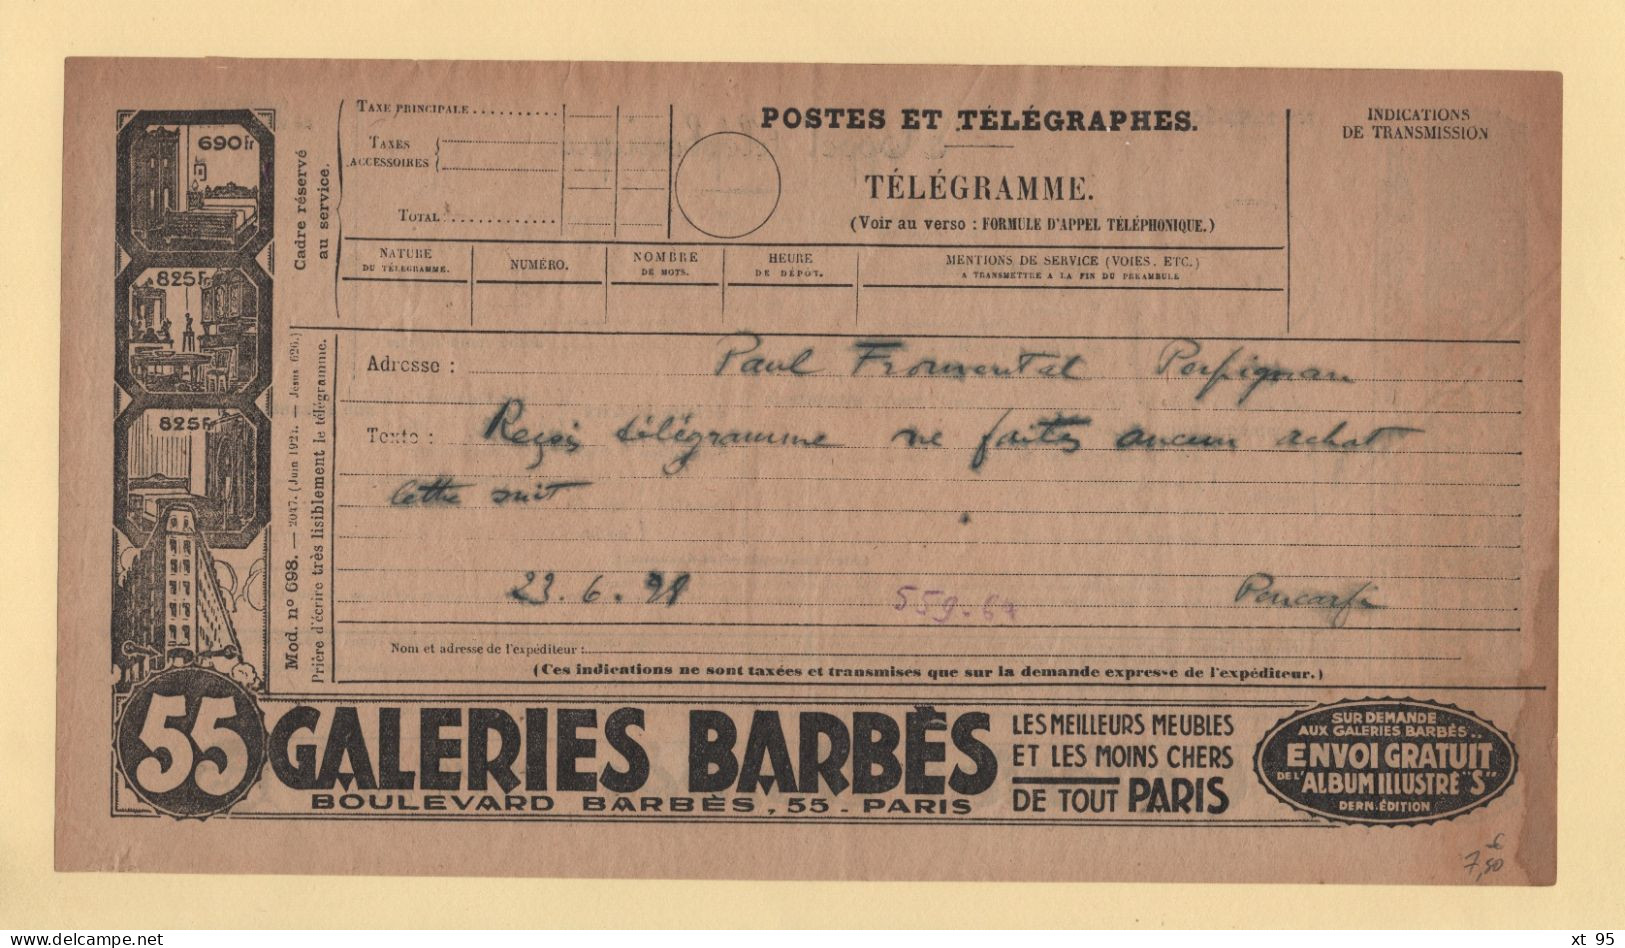 Telegramme Illustre - Galeries Barbes - 1928 - Perpignan - Telegraphie Und Telefon